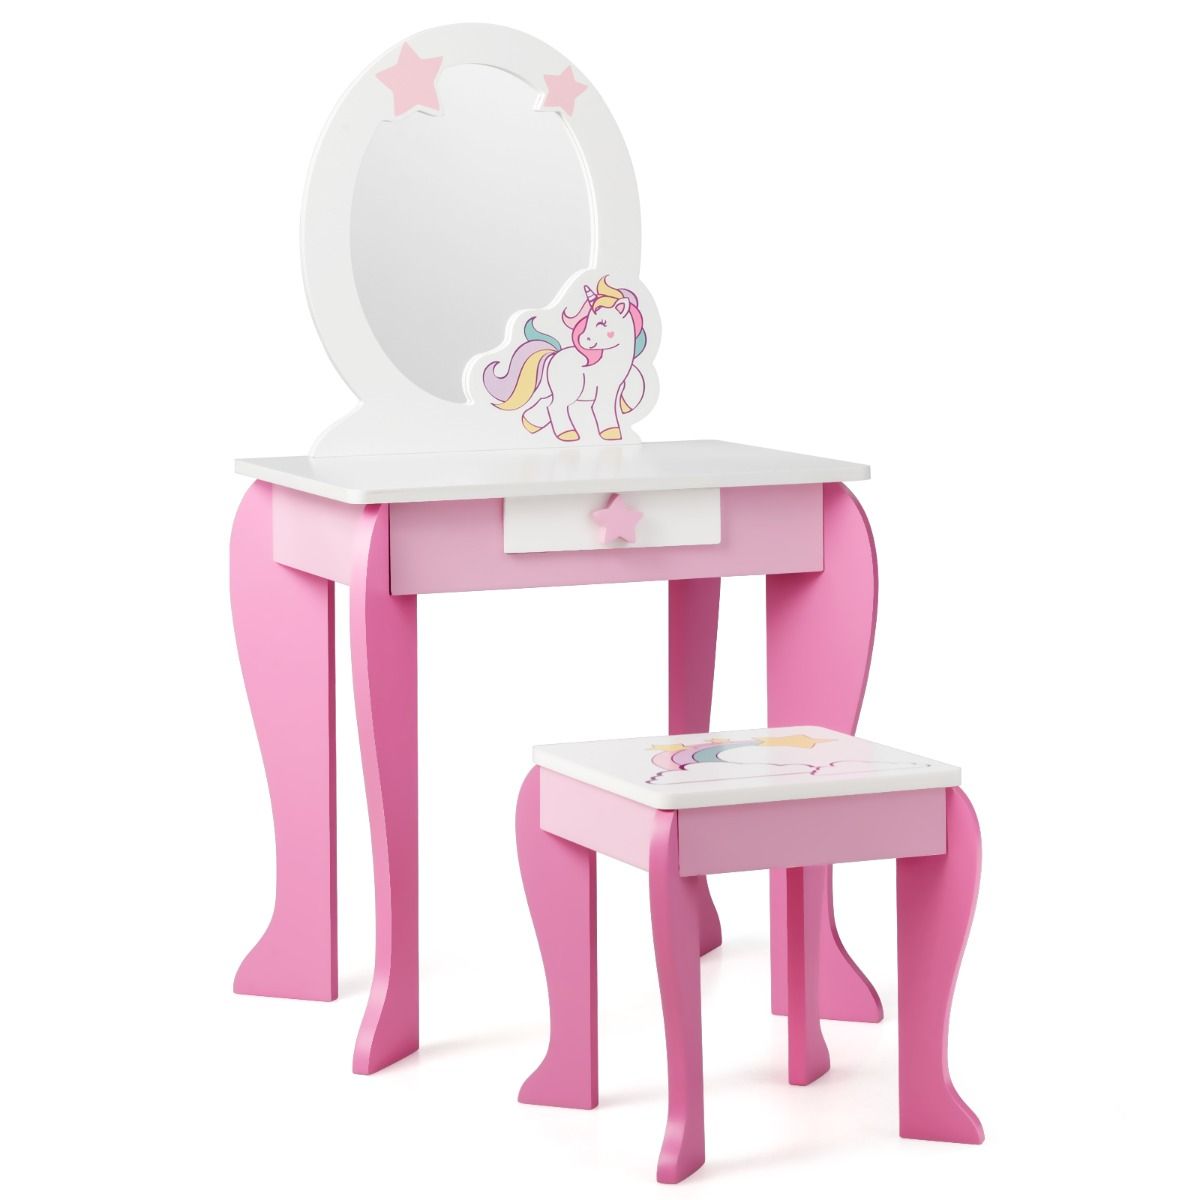 Dječji toaletni stolić i tabure,  s ogledalom koje se može ukloniti, ružičast/bijeli